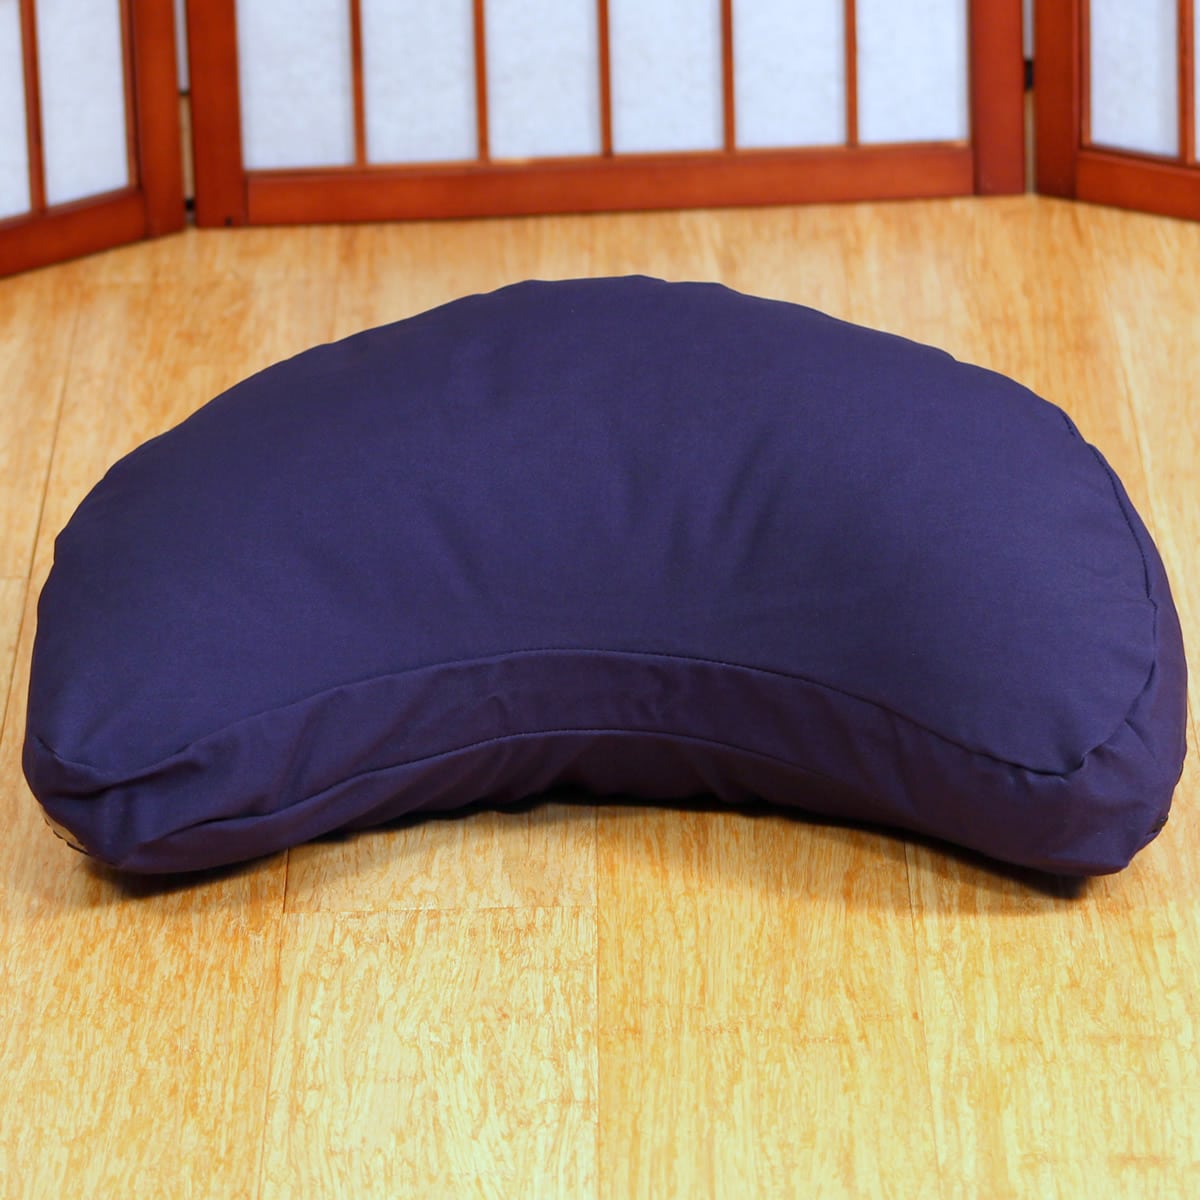 Crescent Zafu Meditation Cushion Made in the USA 